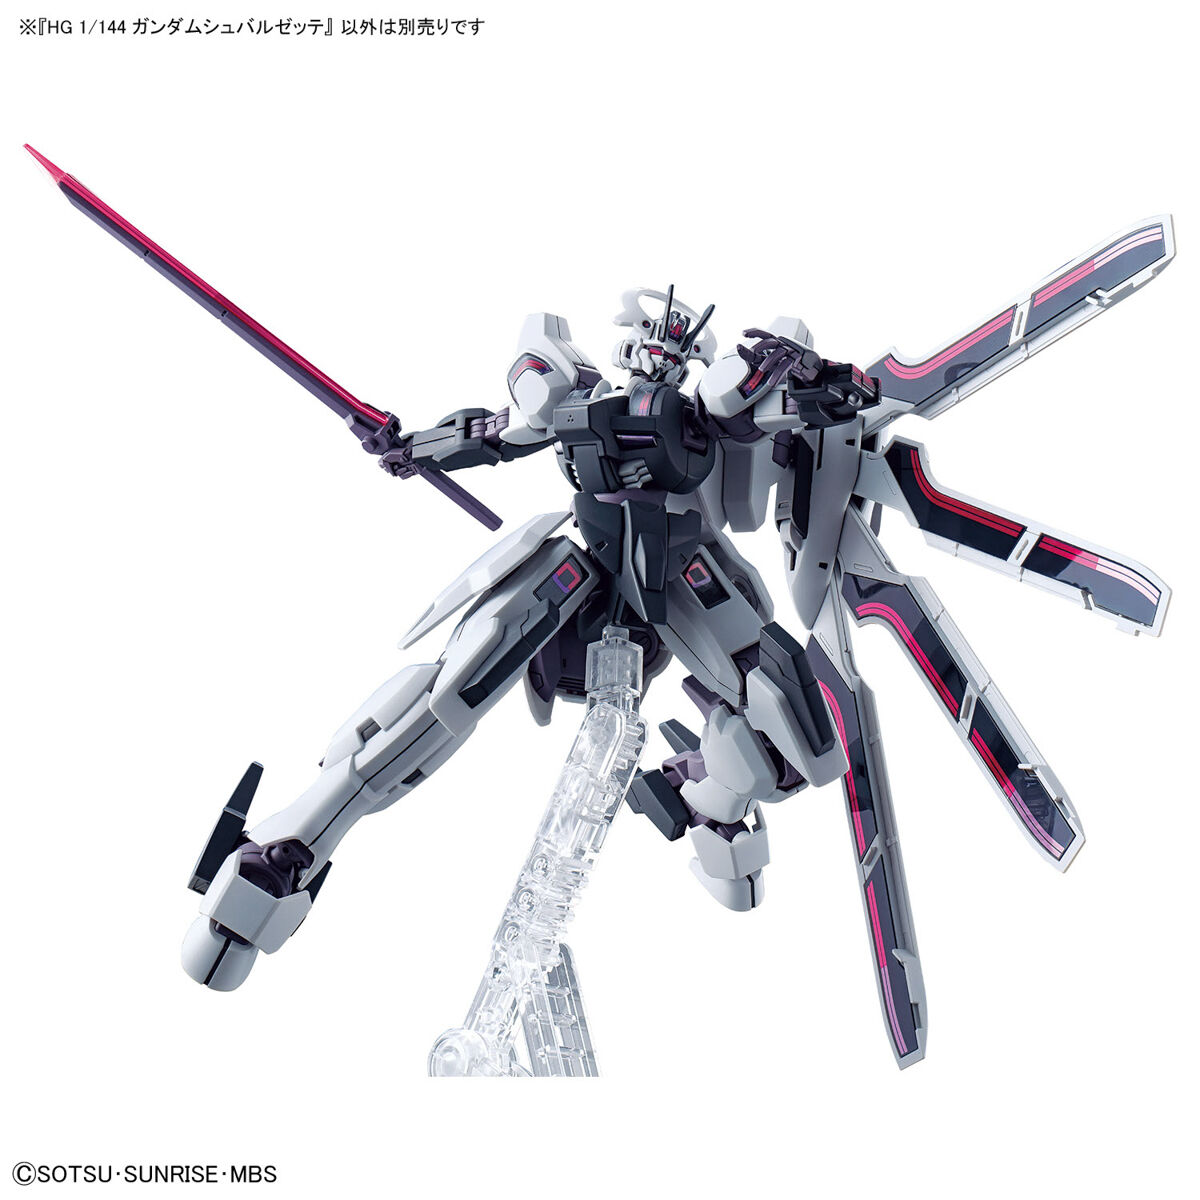 HGWM 1/144 No.25 MDX-0003 Gundam Schwarzette